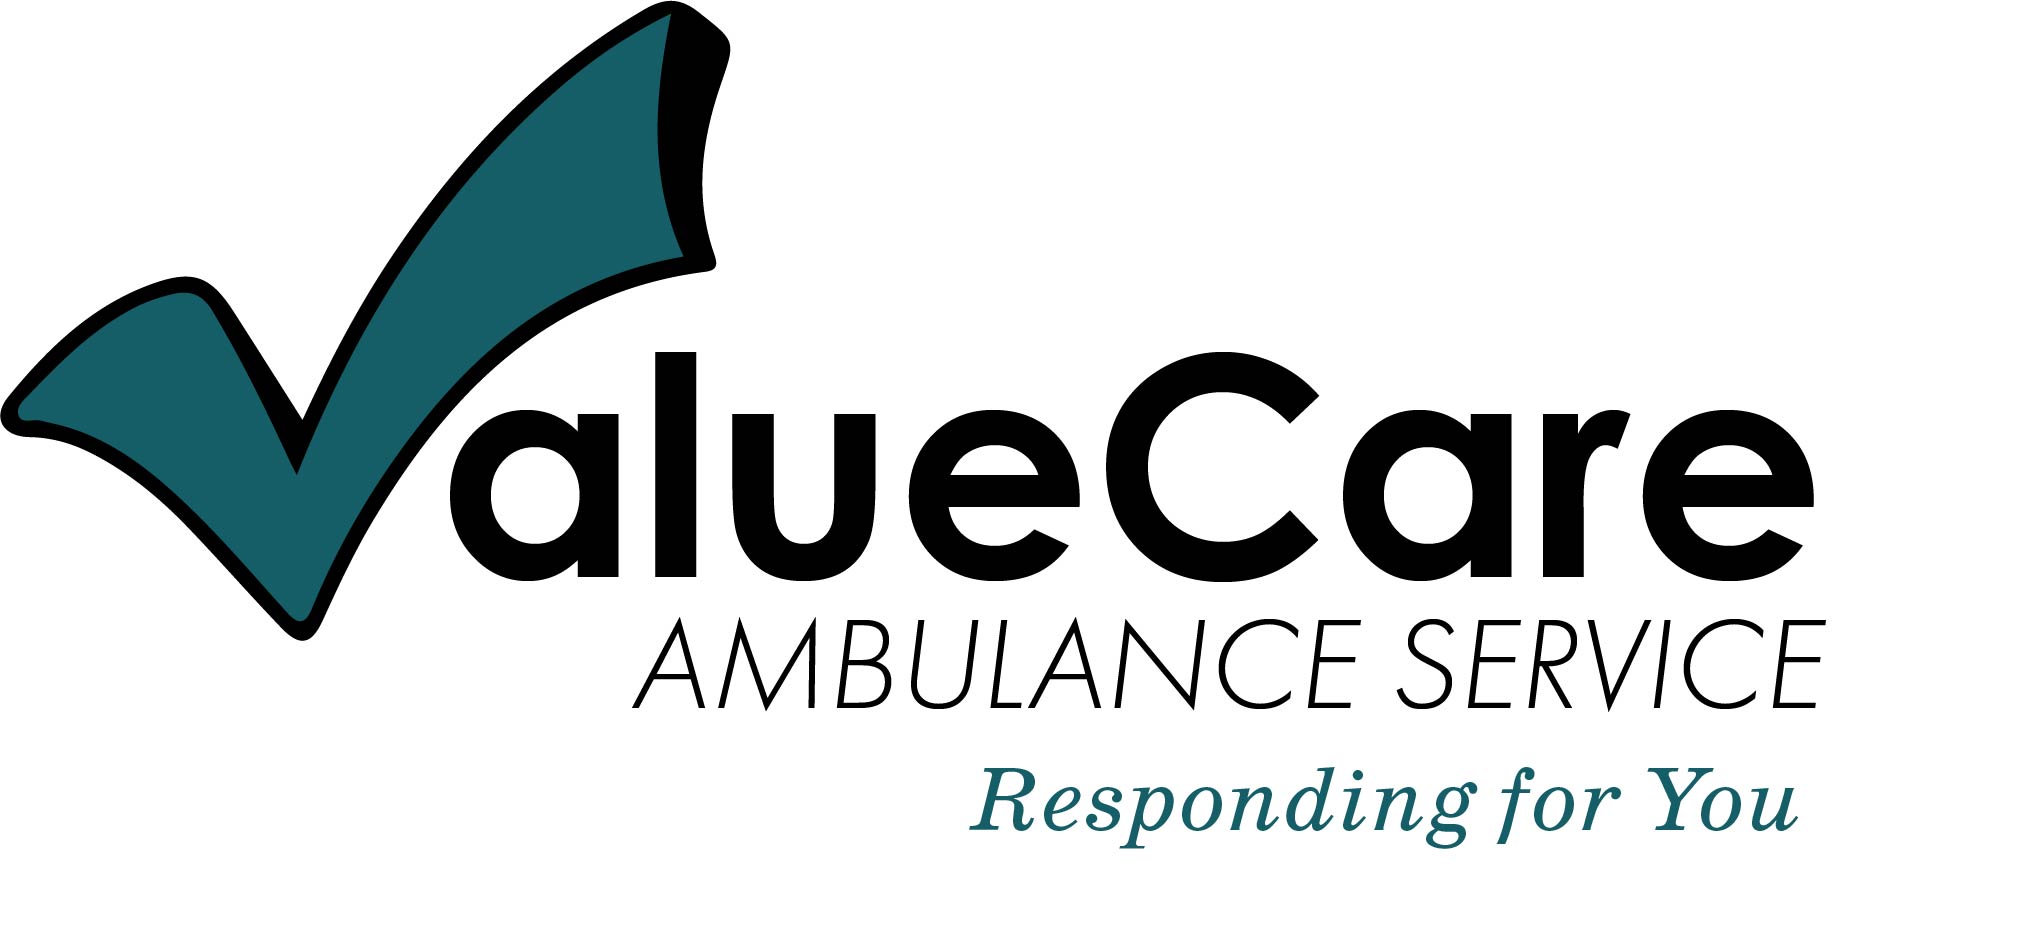 Beverage Station Sponsor: ValueCare Ambulance Services